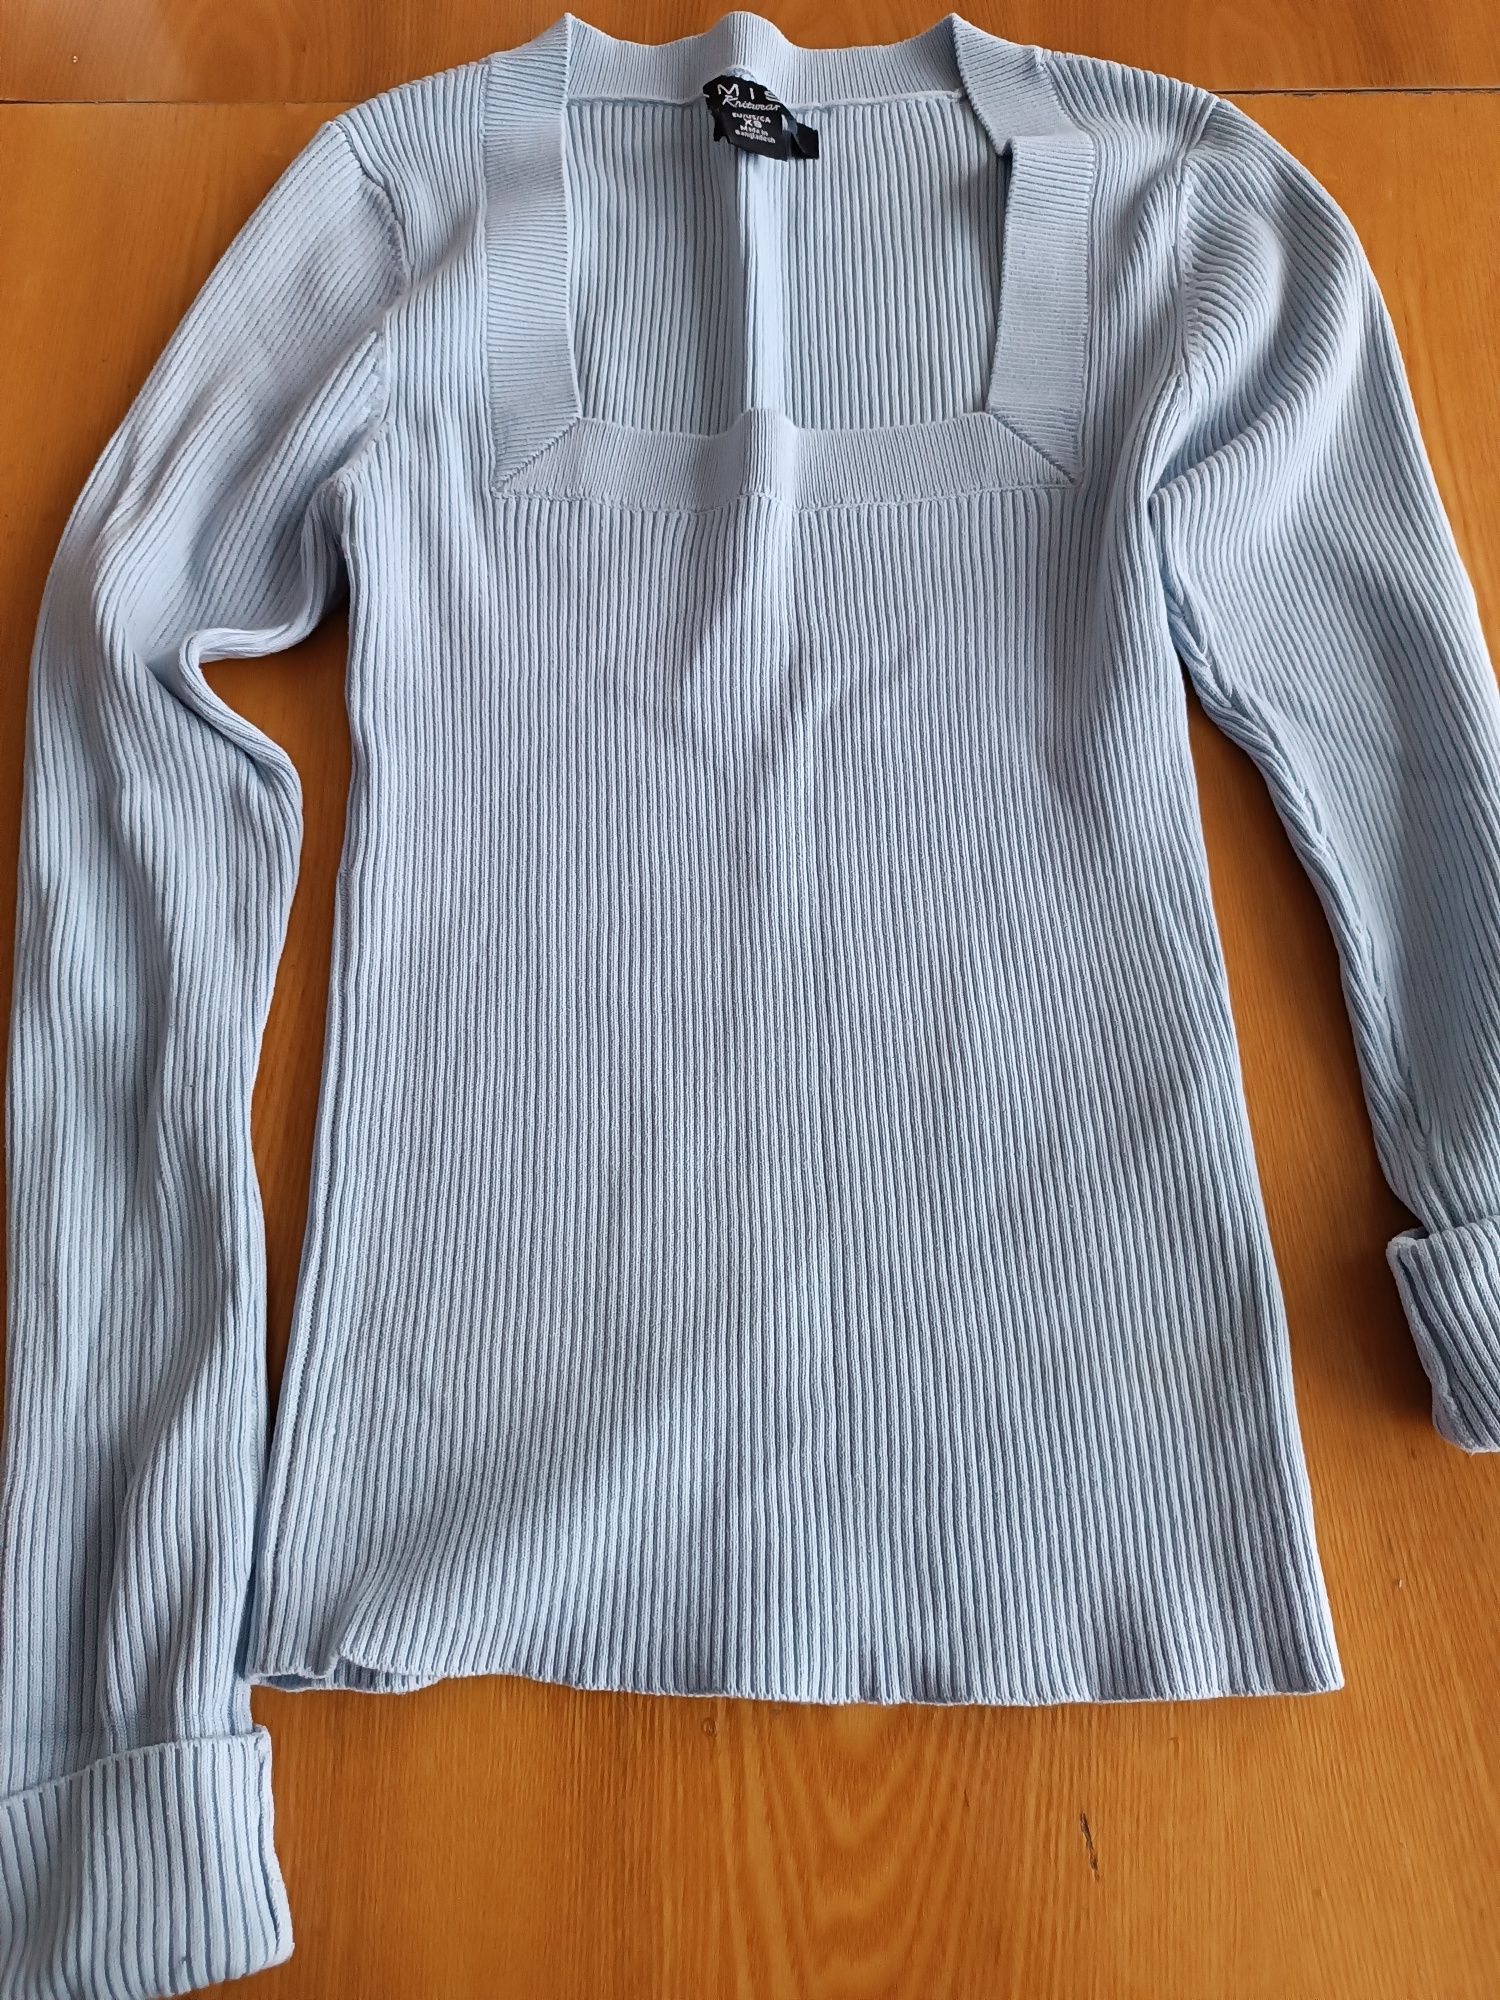 Bluzka, sweterek damski, błękitny, firmy Amisu,  XS